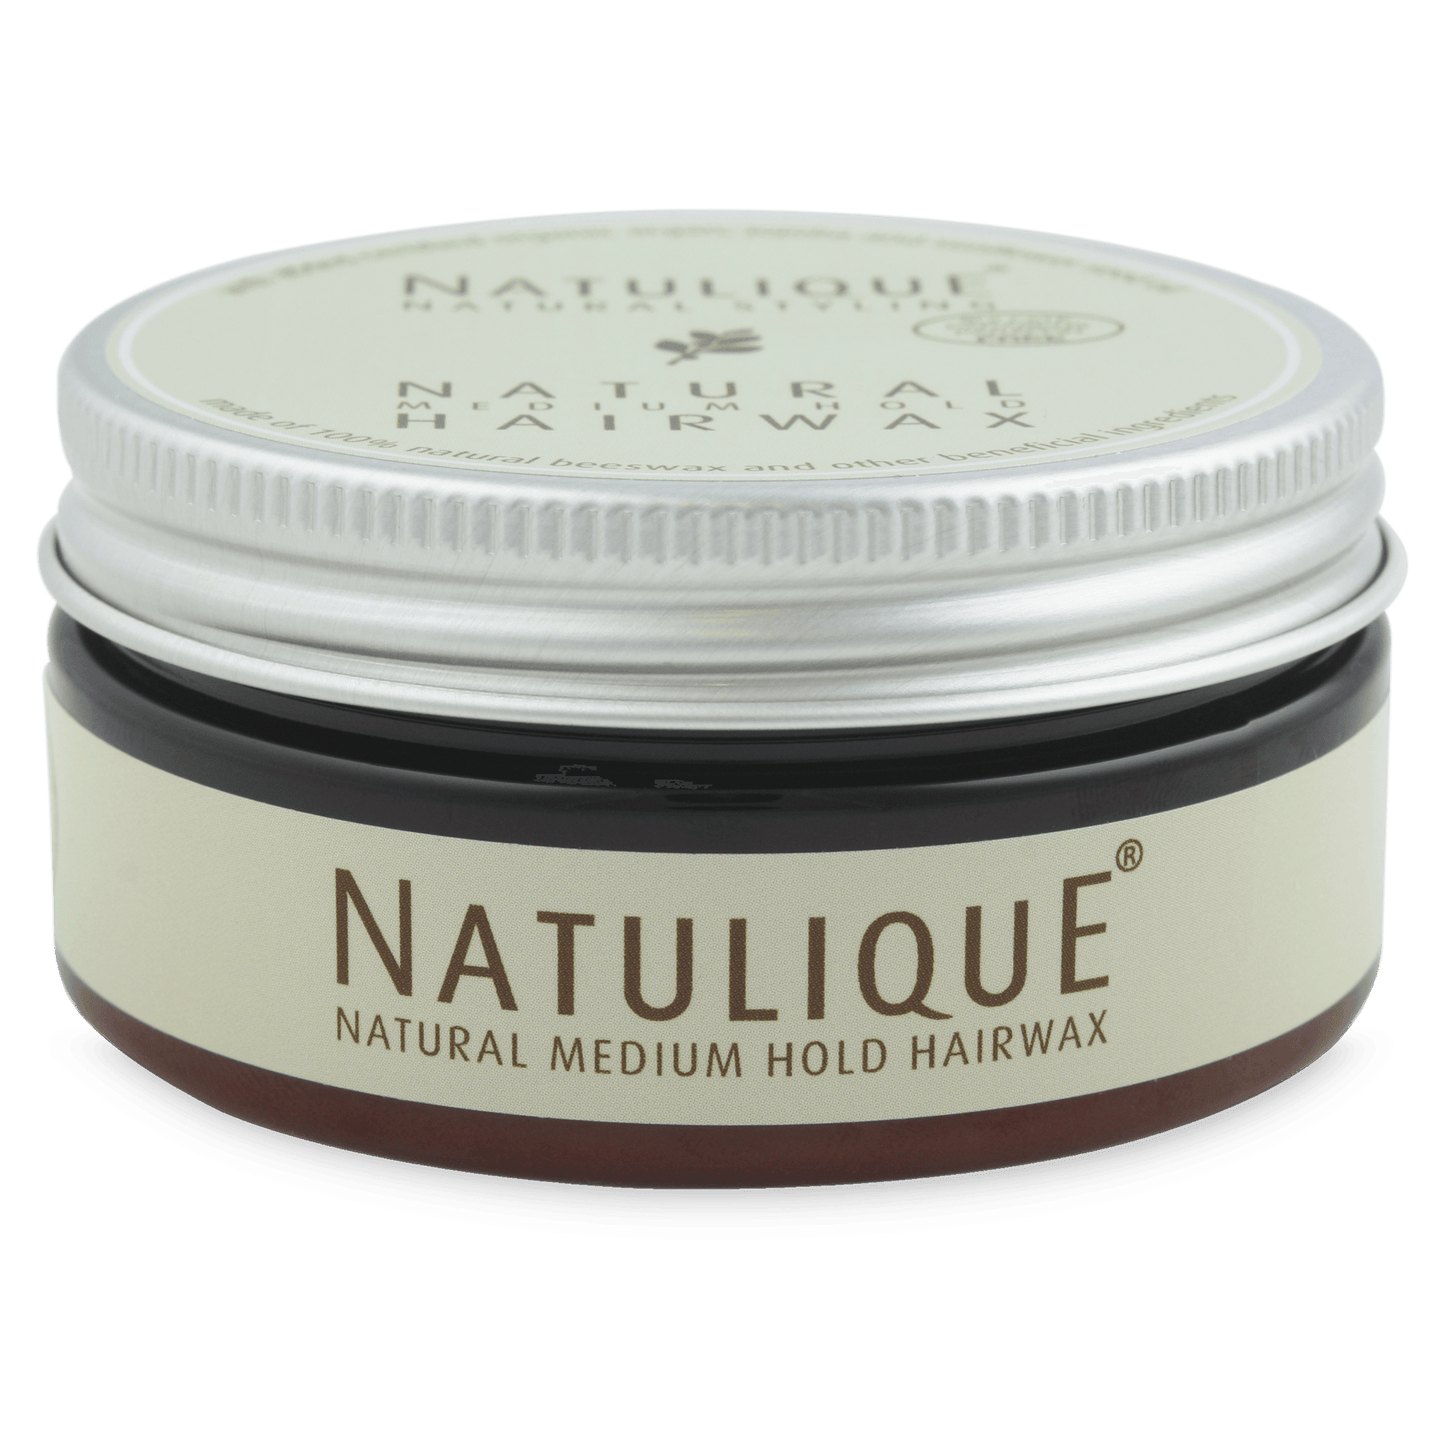 
                  
                    NATULIQUE HAIR WAX MEDIUM HOLD BOX 75 ml
                  
                